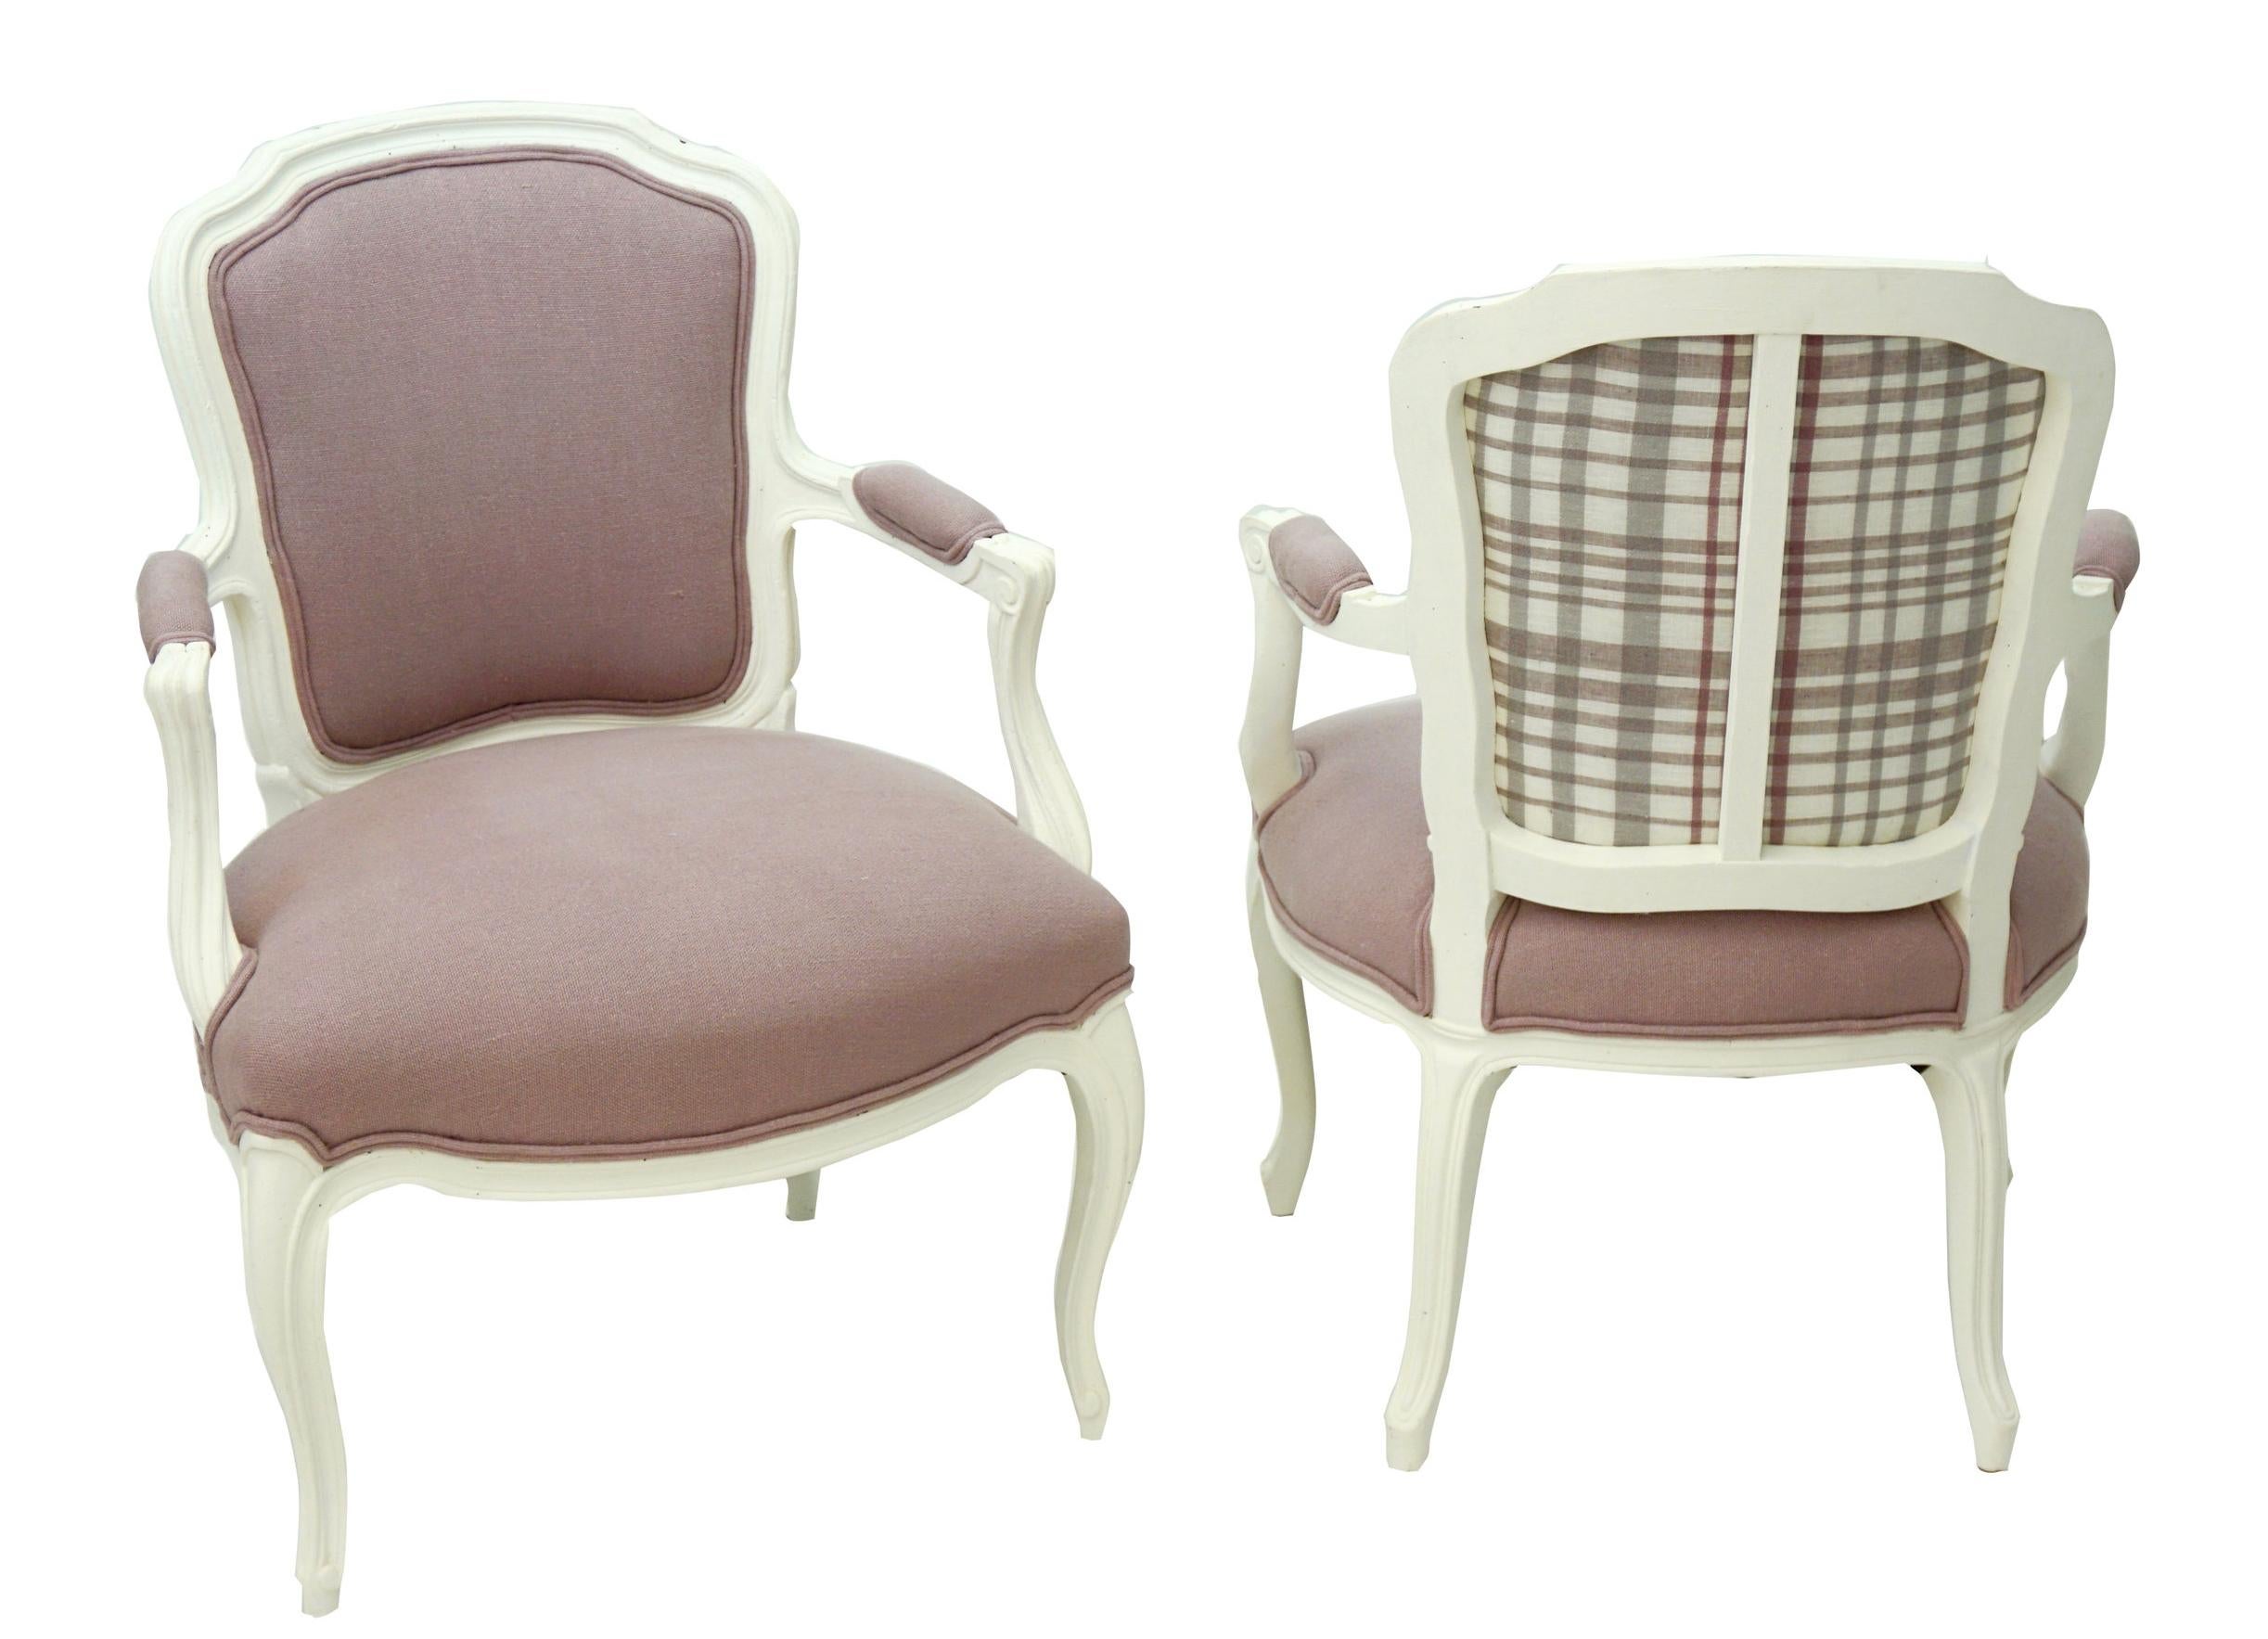 Ein Paar französische Sessel im Stil Louis XV. Neu gepolstert mit lavendelfarbenem Leinen und weiß gestrichen.

Jedes Maß: 14,5